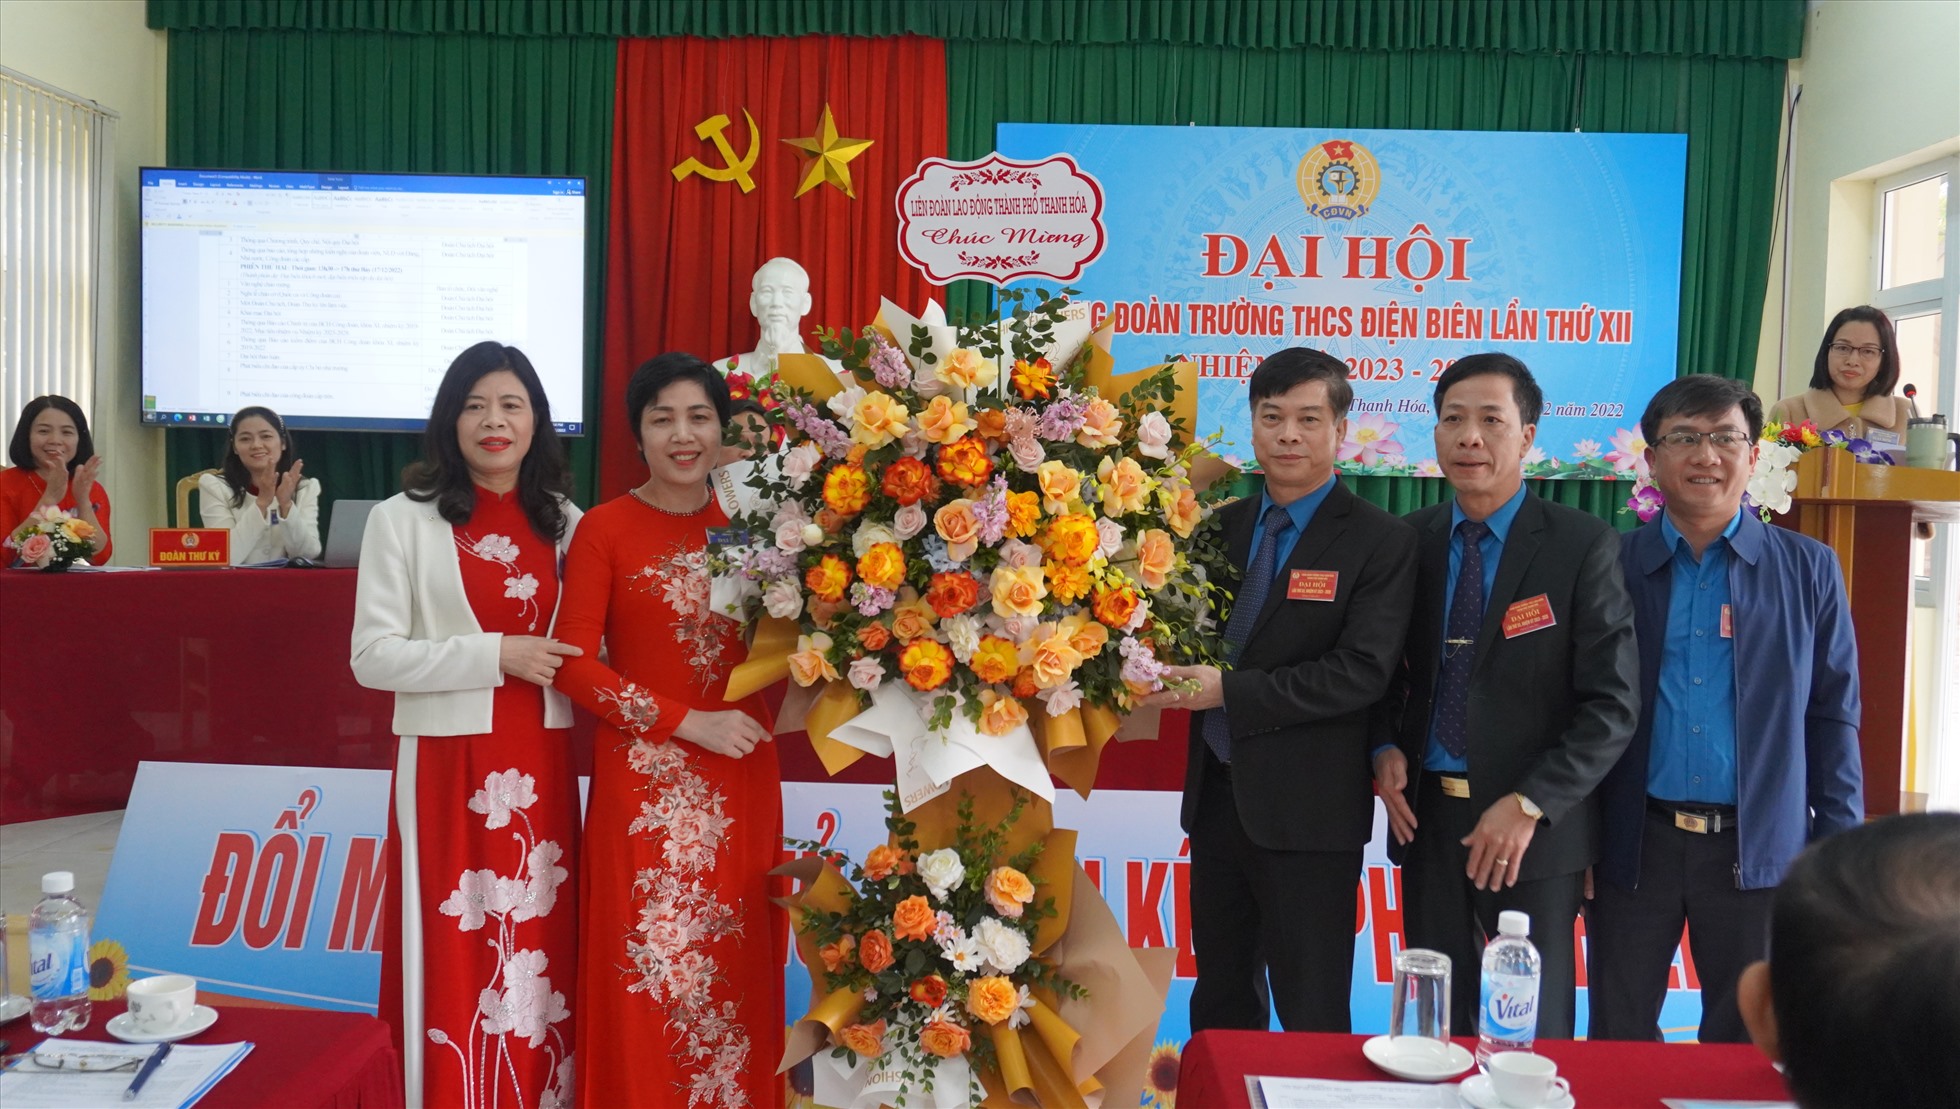 Lãnh đạo LĐLĐ TP.Thanh Hóa tặng hoa chúc mừng Đại hội Công đoàn Trường THCS Điện Biên. Ảnh: Quách Du